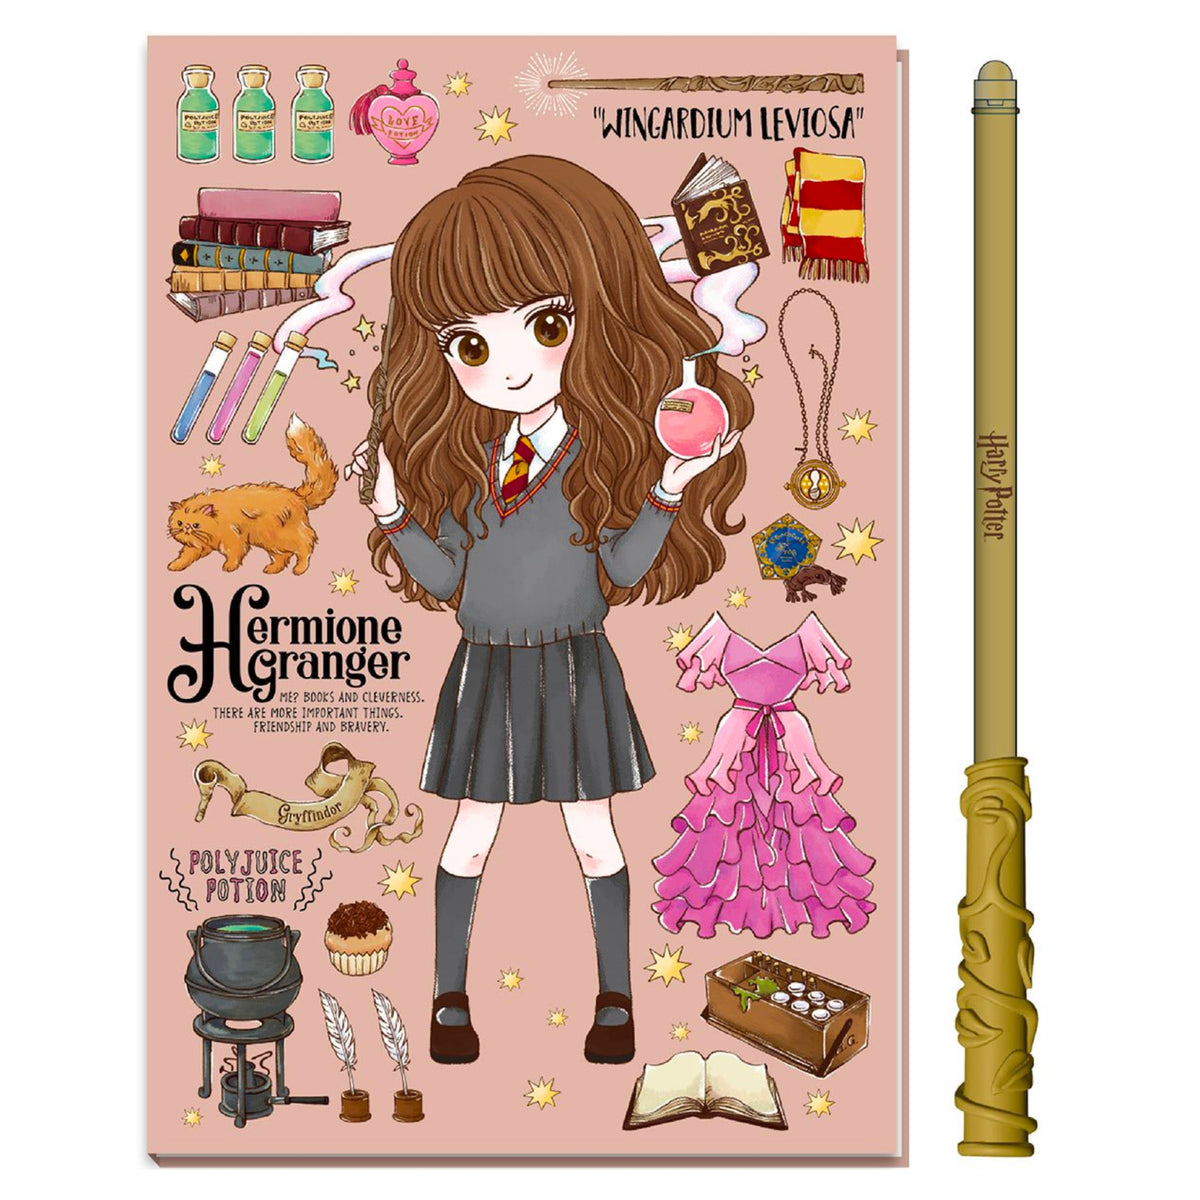 Hermione Granger Magic Wand Pen